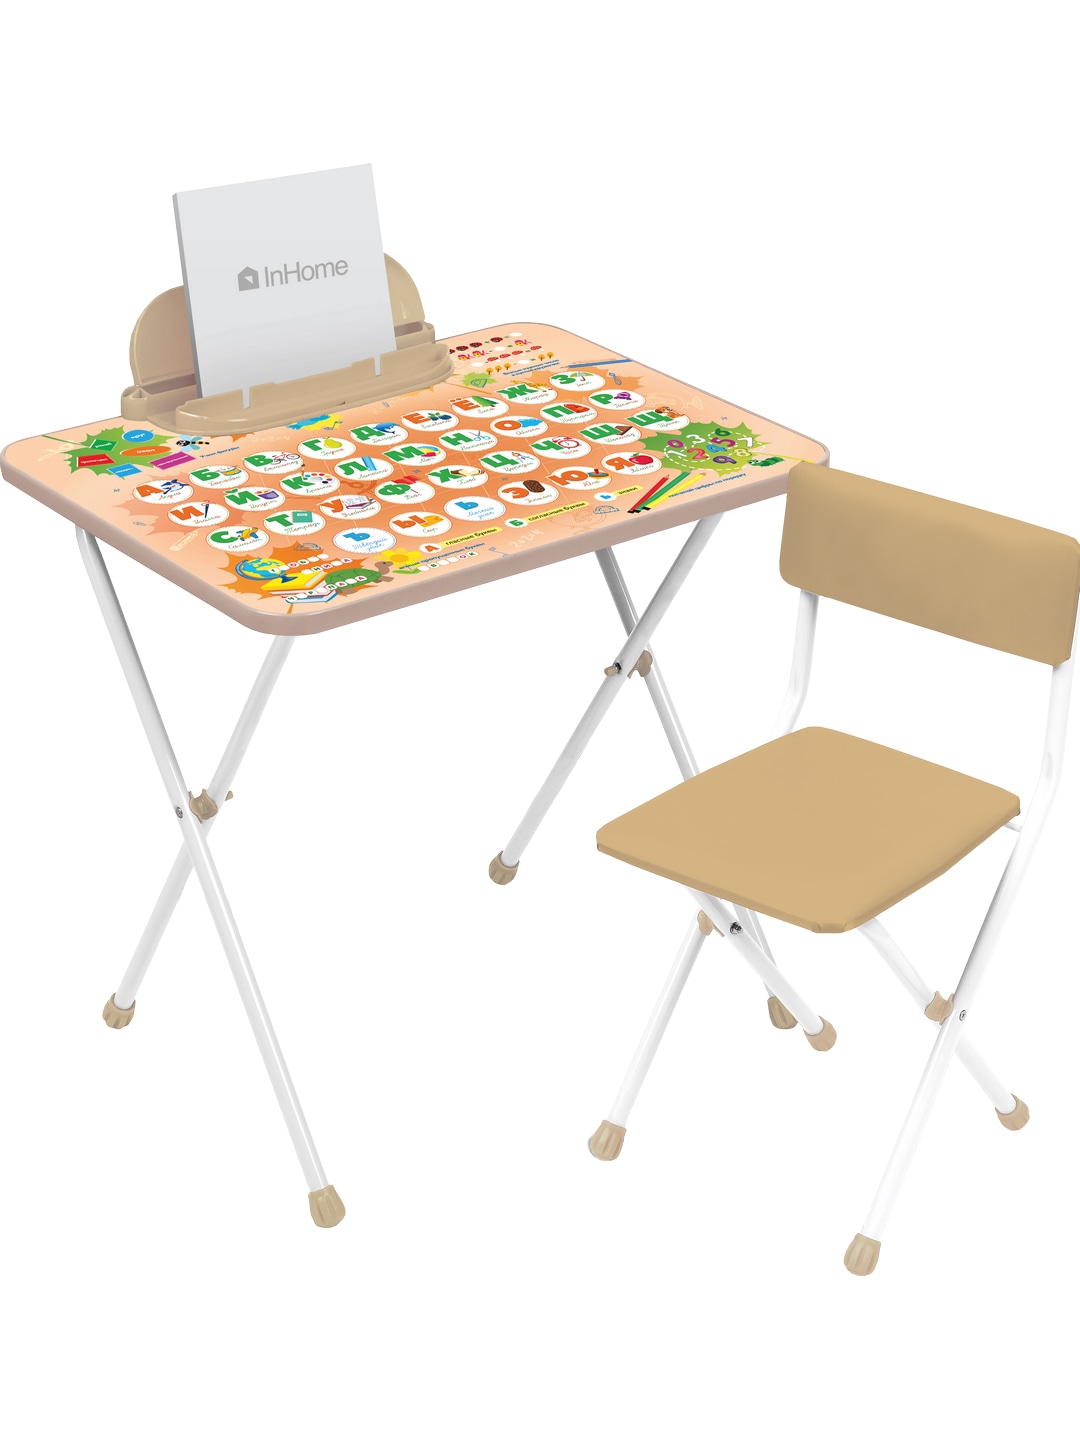 Комплект детской мебели InHome игровой стол и стул - фото 11